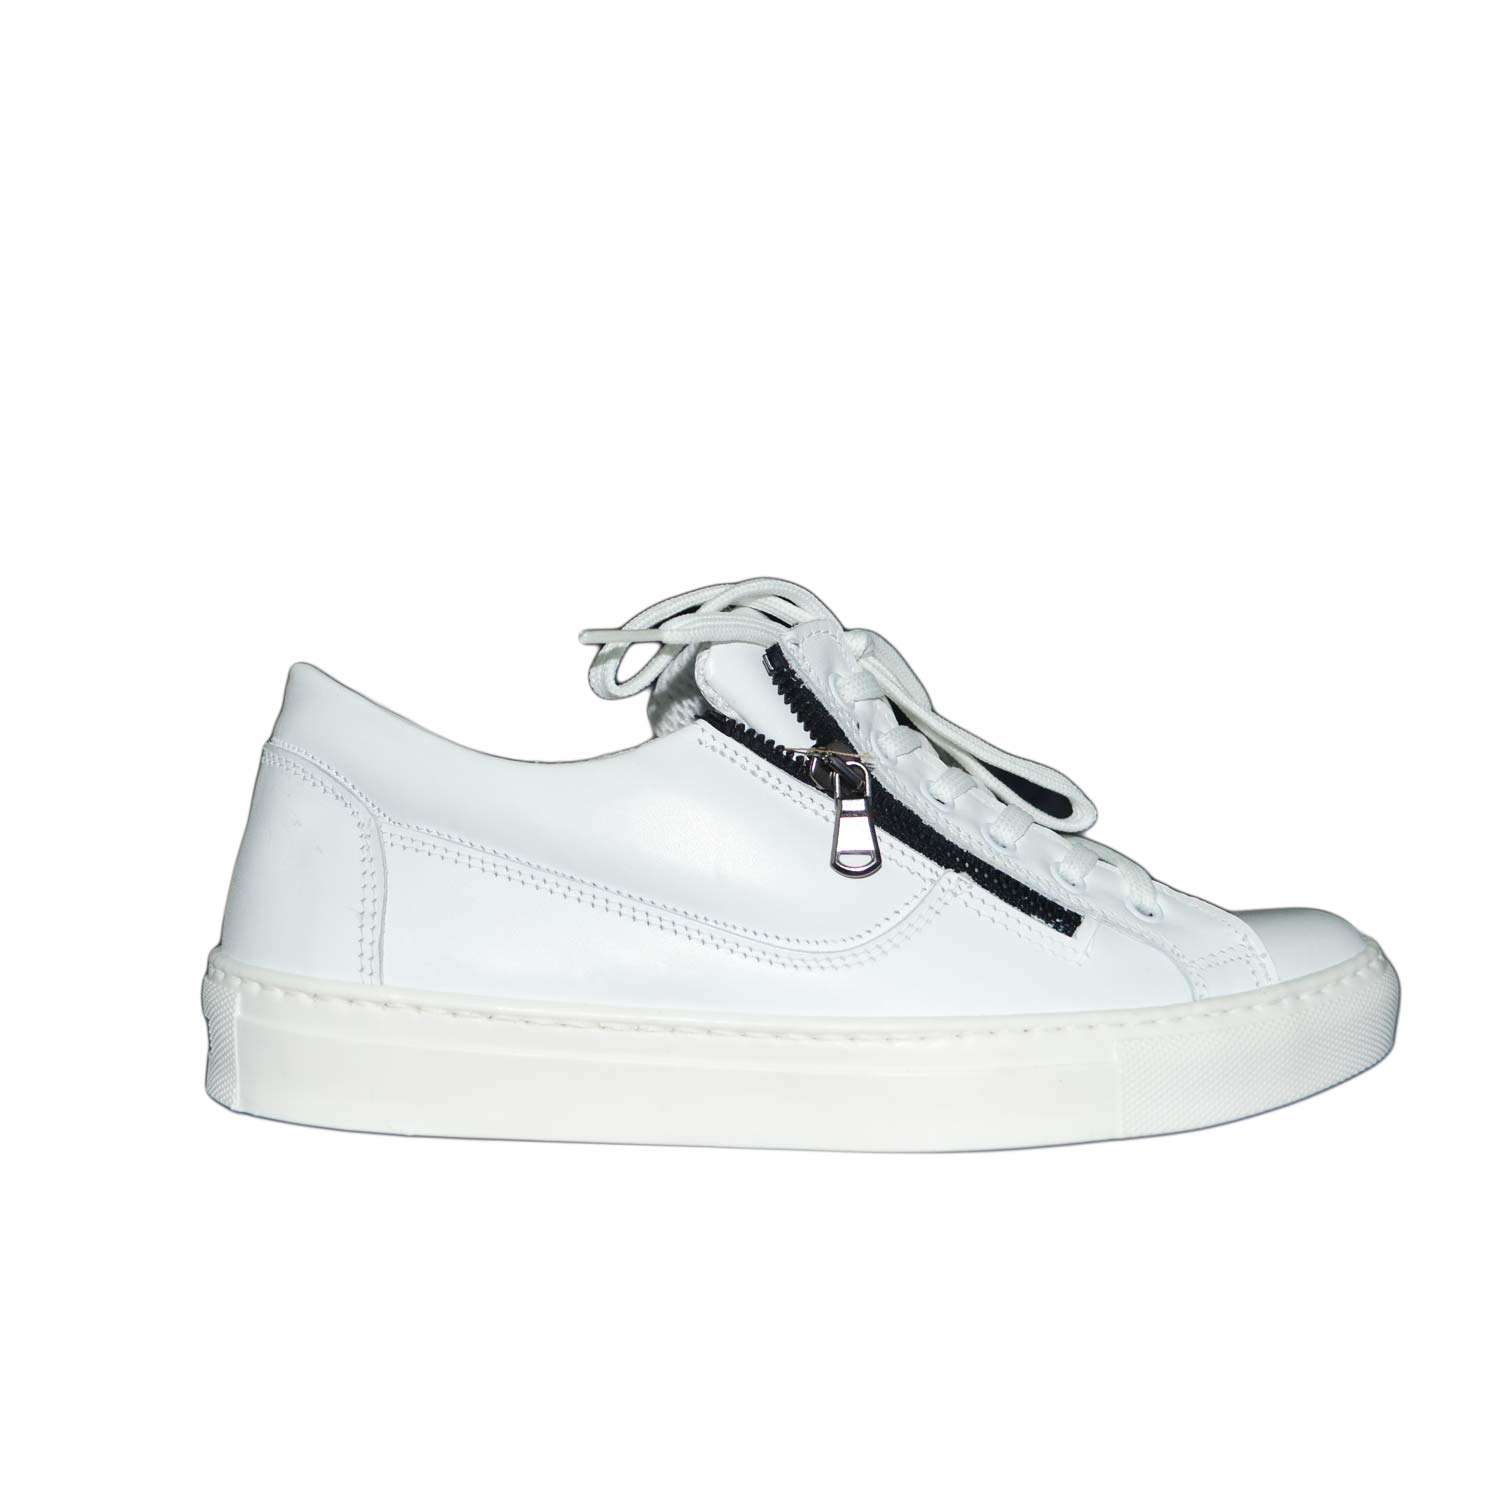 Sneakers bassa doppia zip vera pelle bianco made in italy lacci moda.